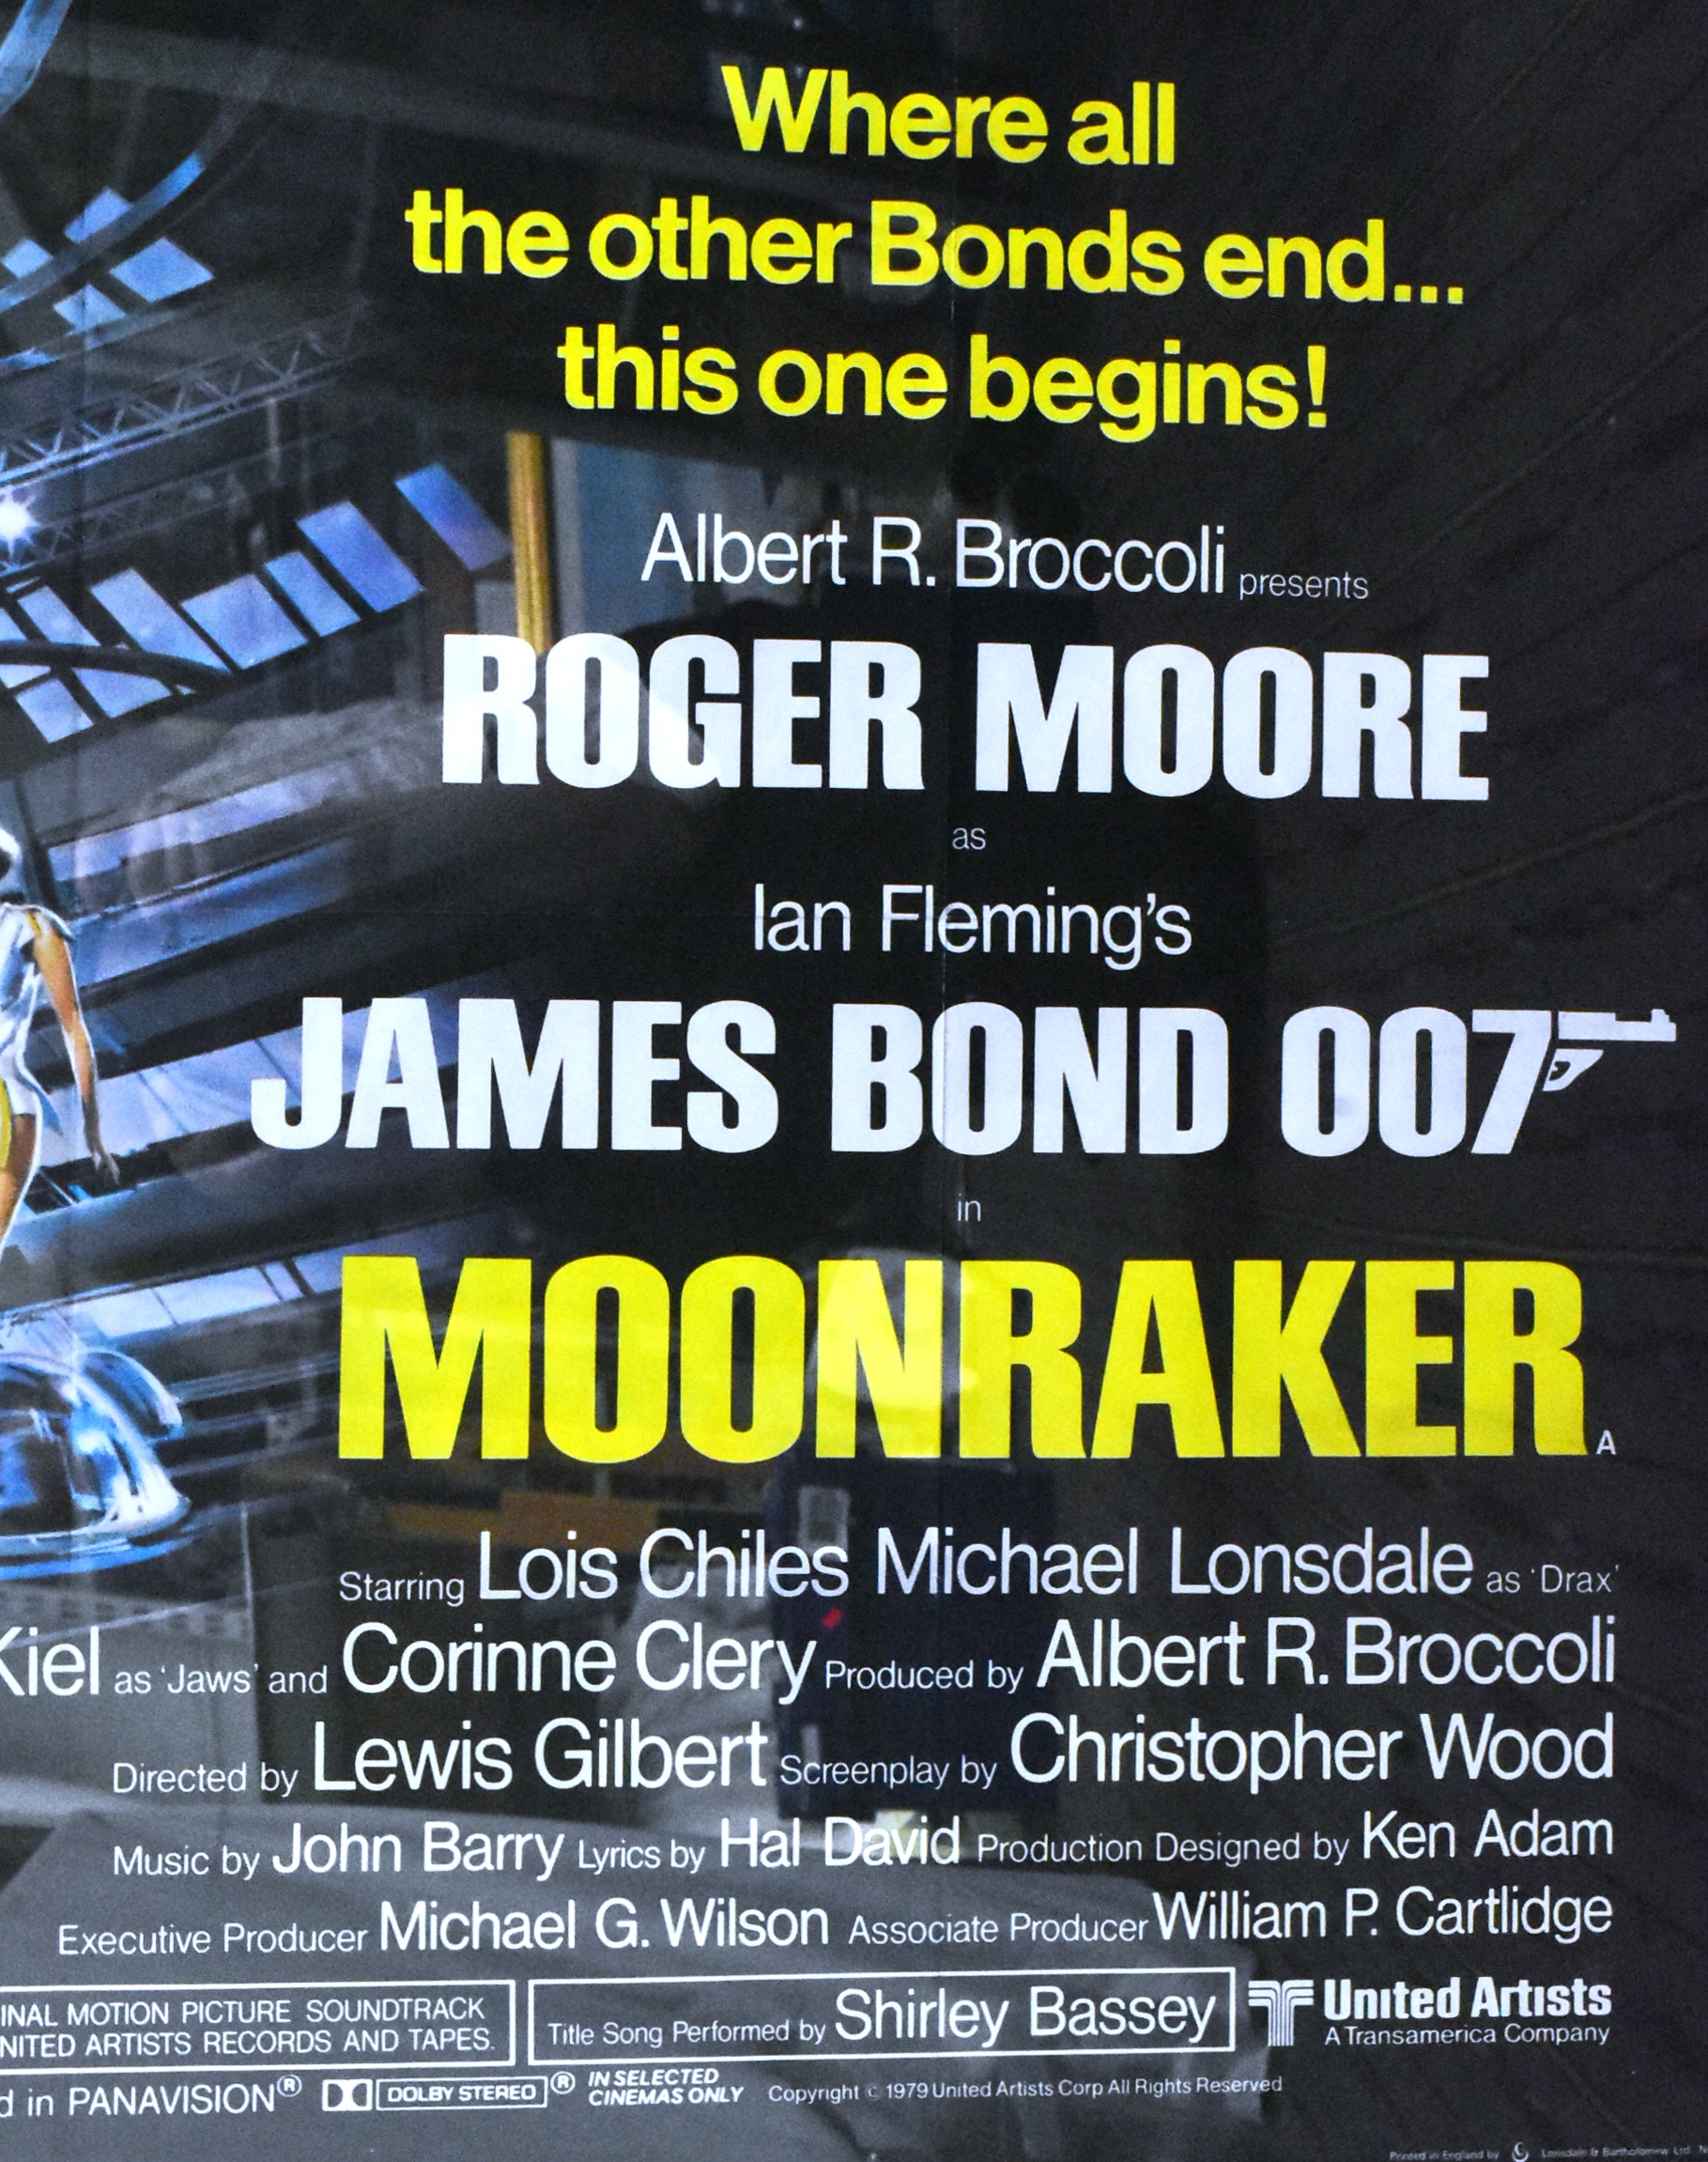 MOONRAKER (1979) - JAMES BOND - ORIGINAL QUAD POSTER - Image 3 of 4